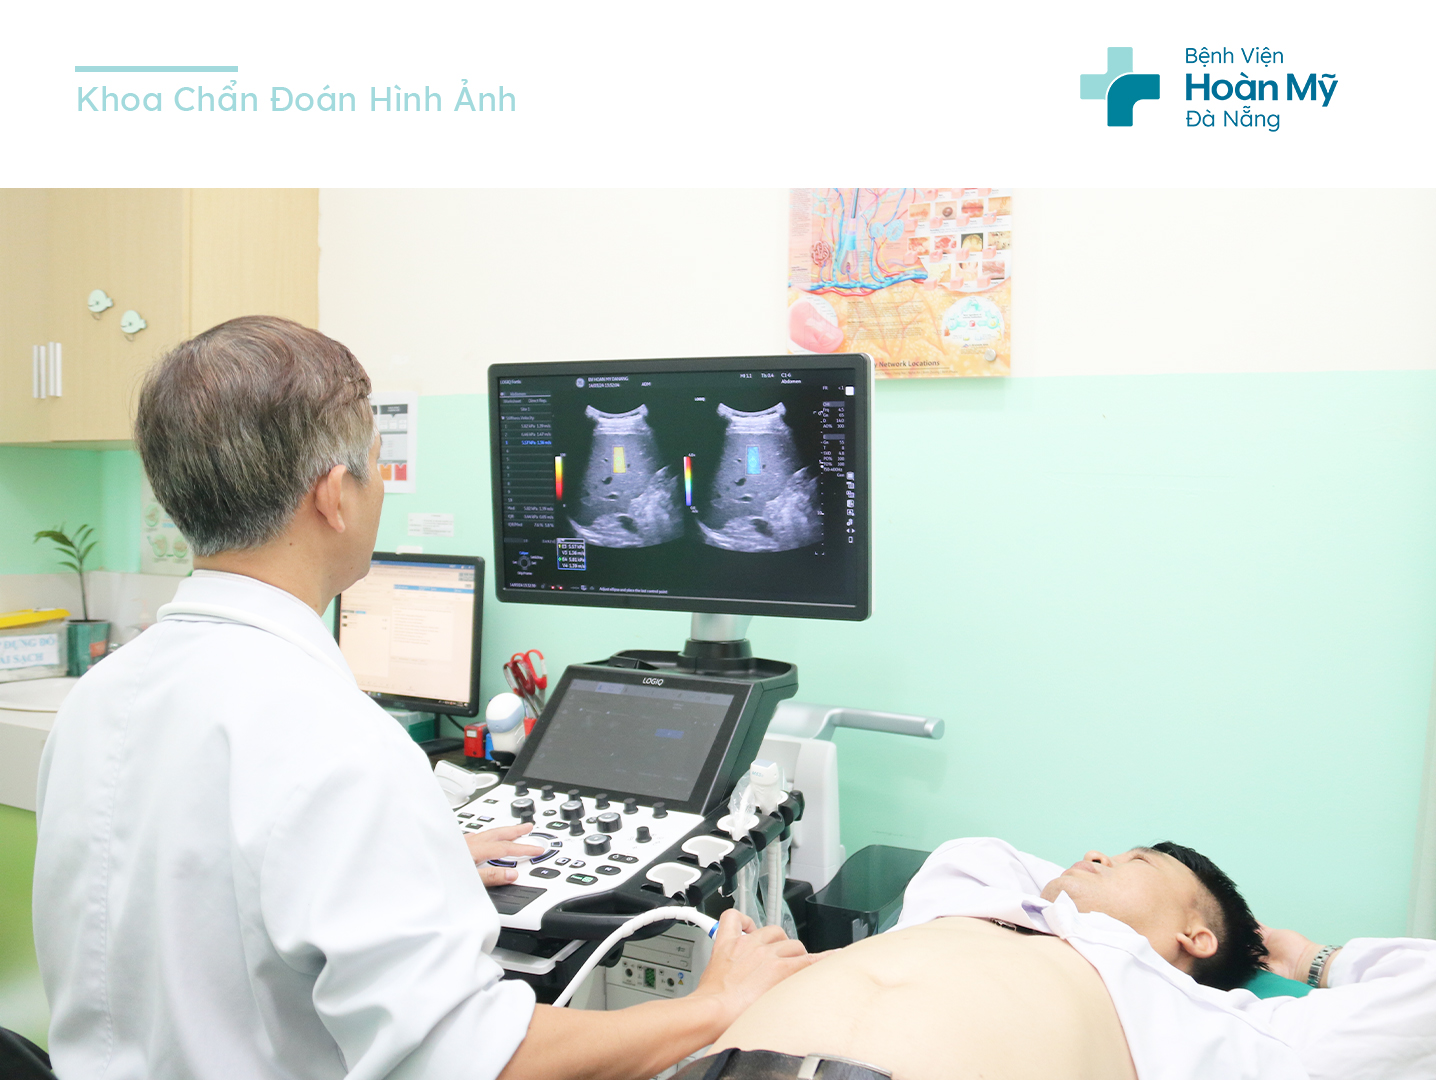 Ứng dụng siêu âm đàn hồi mô trong chẩn đoán sớm bệnh lý gan, tuyến giáp, tuyến vú tại Bệnh viện Hoàn Mỹ Đà Nẵng